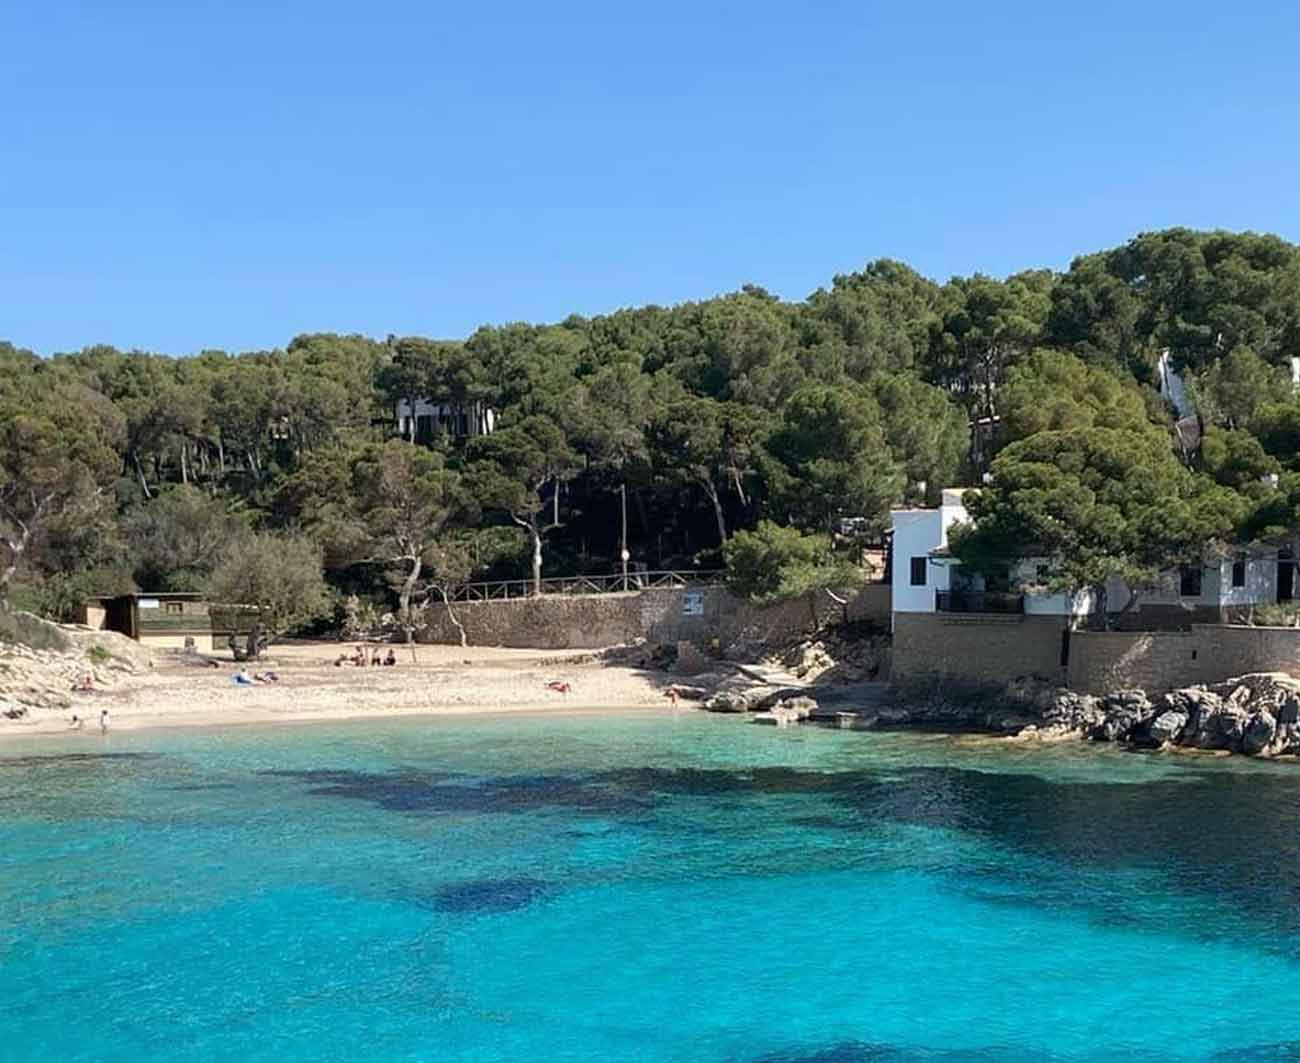 Schöner Starnd auf Mallorca, die Cala Gat Bucht.